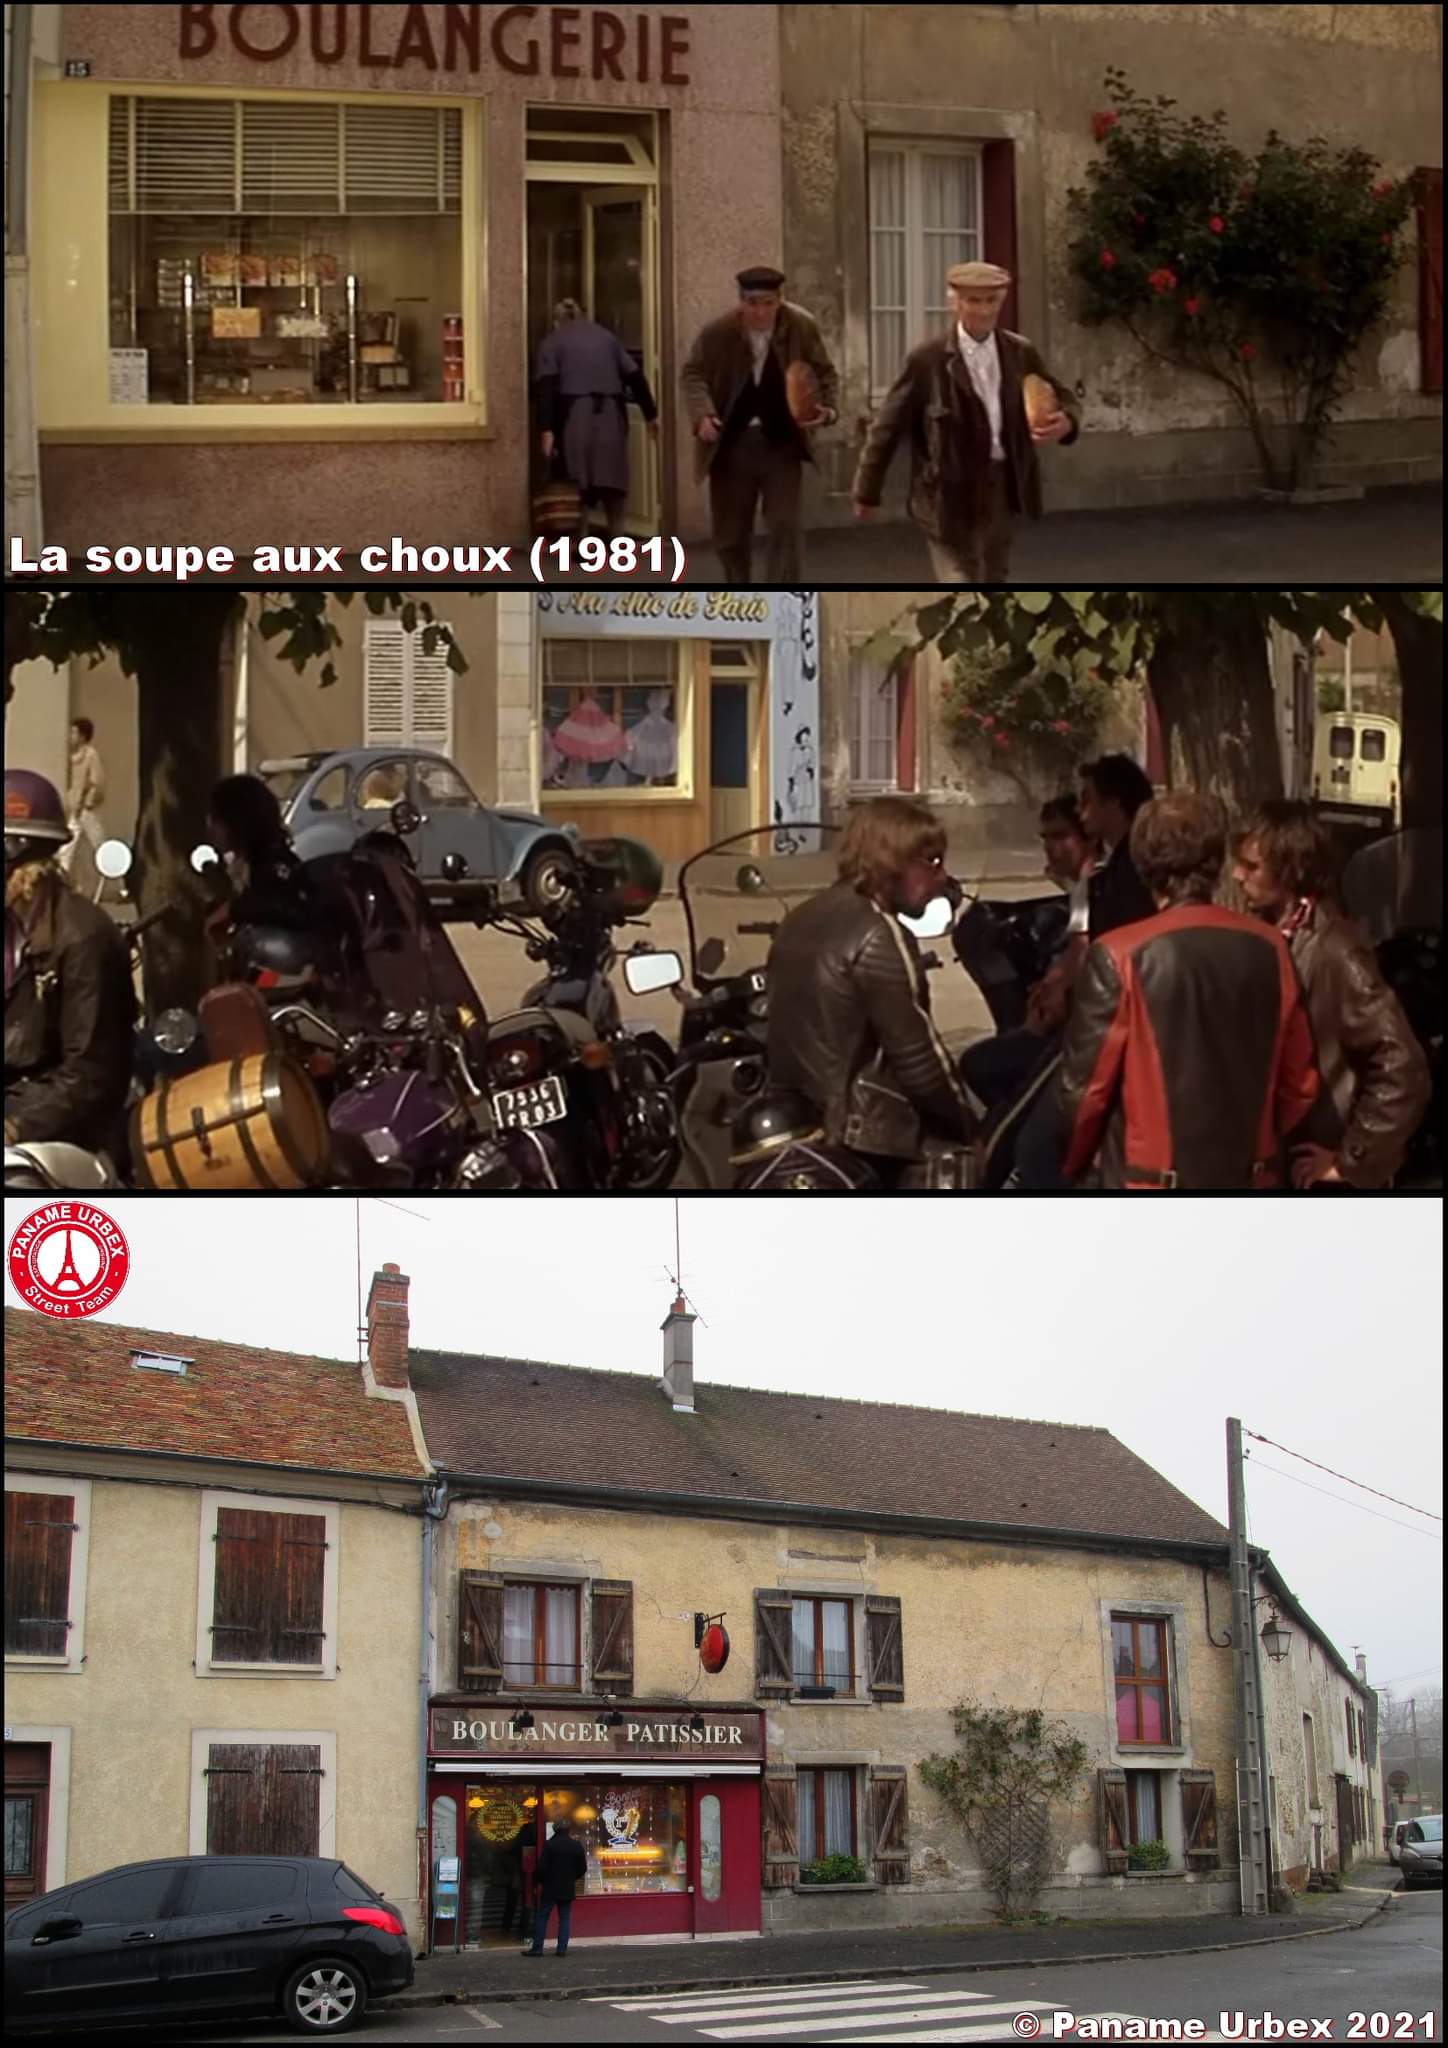 Paname Urbex on X: "La soupe aux choux (Girault, 1981). Dans le film, la boulangerie et le magasin de vêtements sont en fait un seul et même endroit. Il a suffi d'un